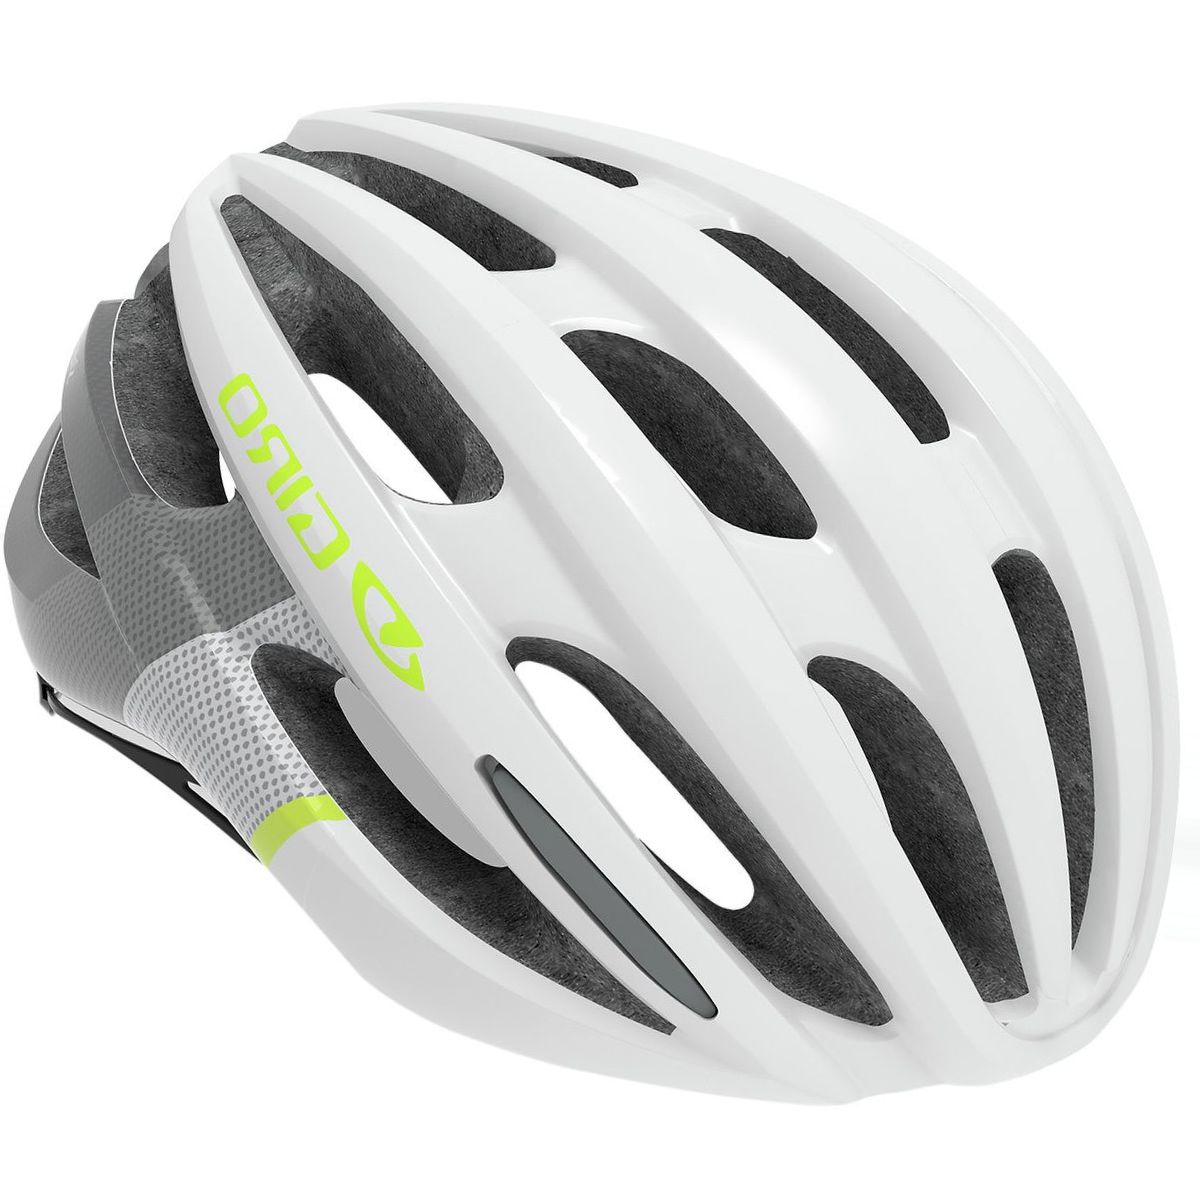 Giro Saga Helmet - Women's